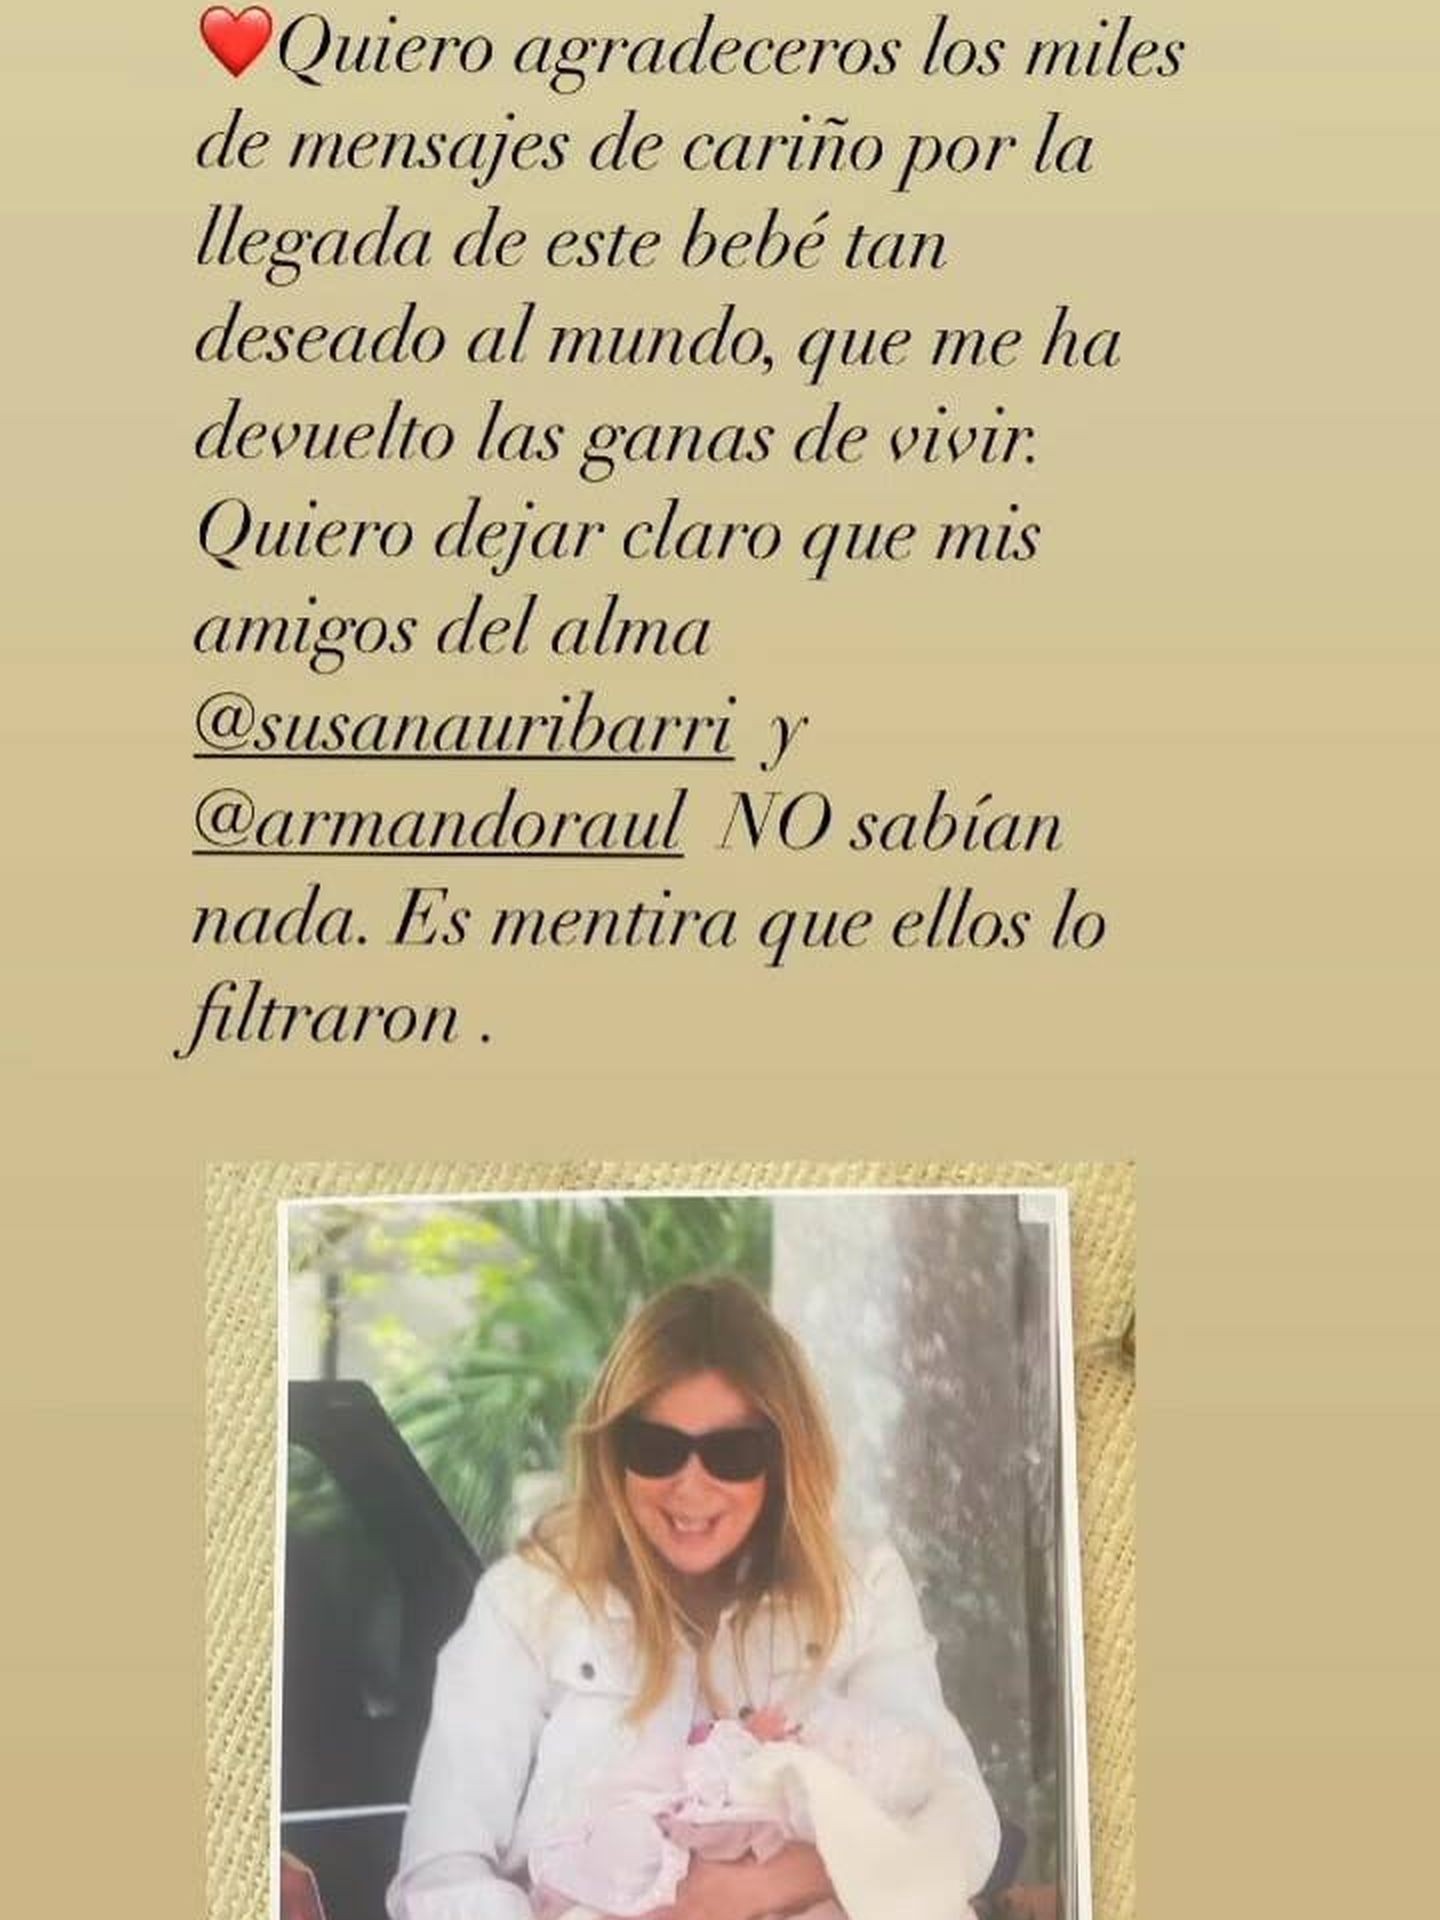 Publicación de Instagram del perfil de Ana Obregón. (@anaobregon)